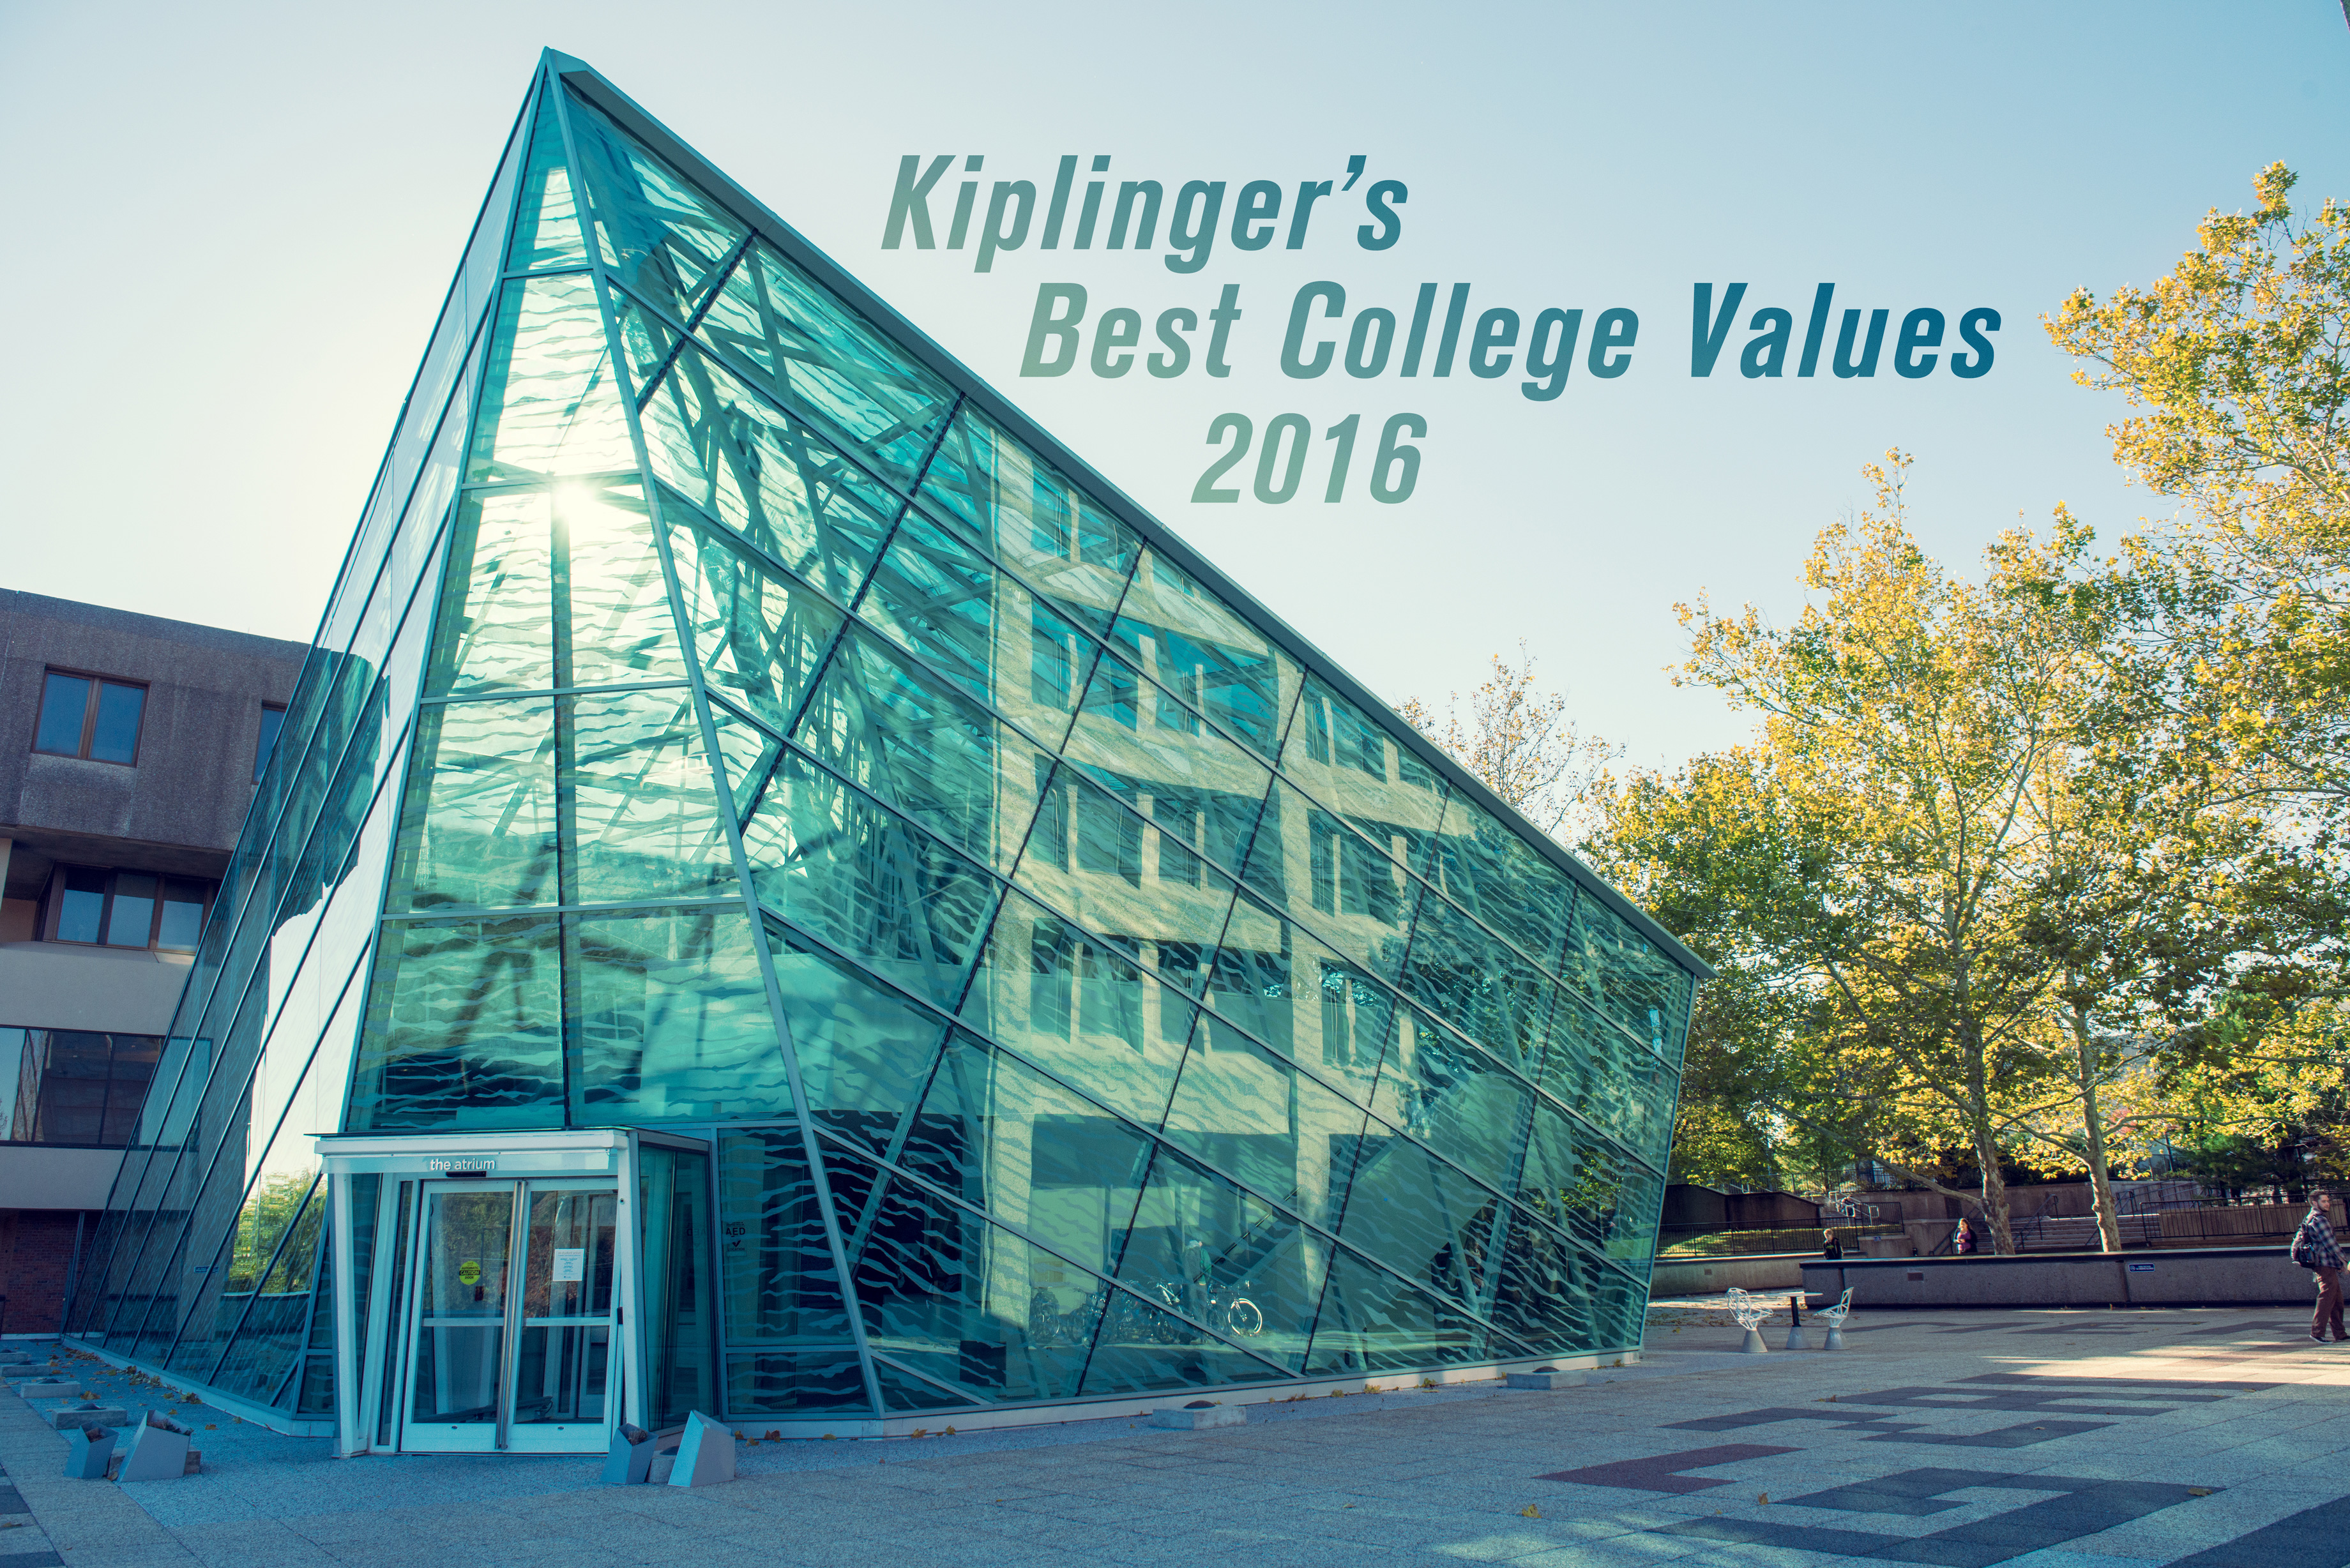 New Paltz named a “Best College Value” by Kiplinger’s